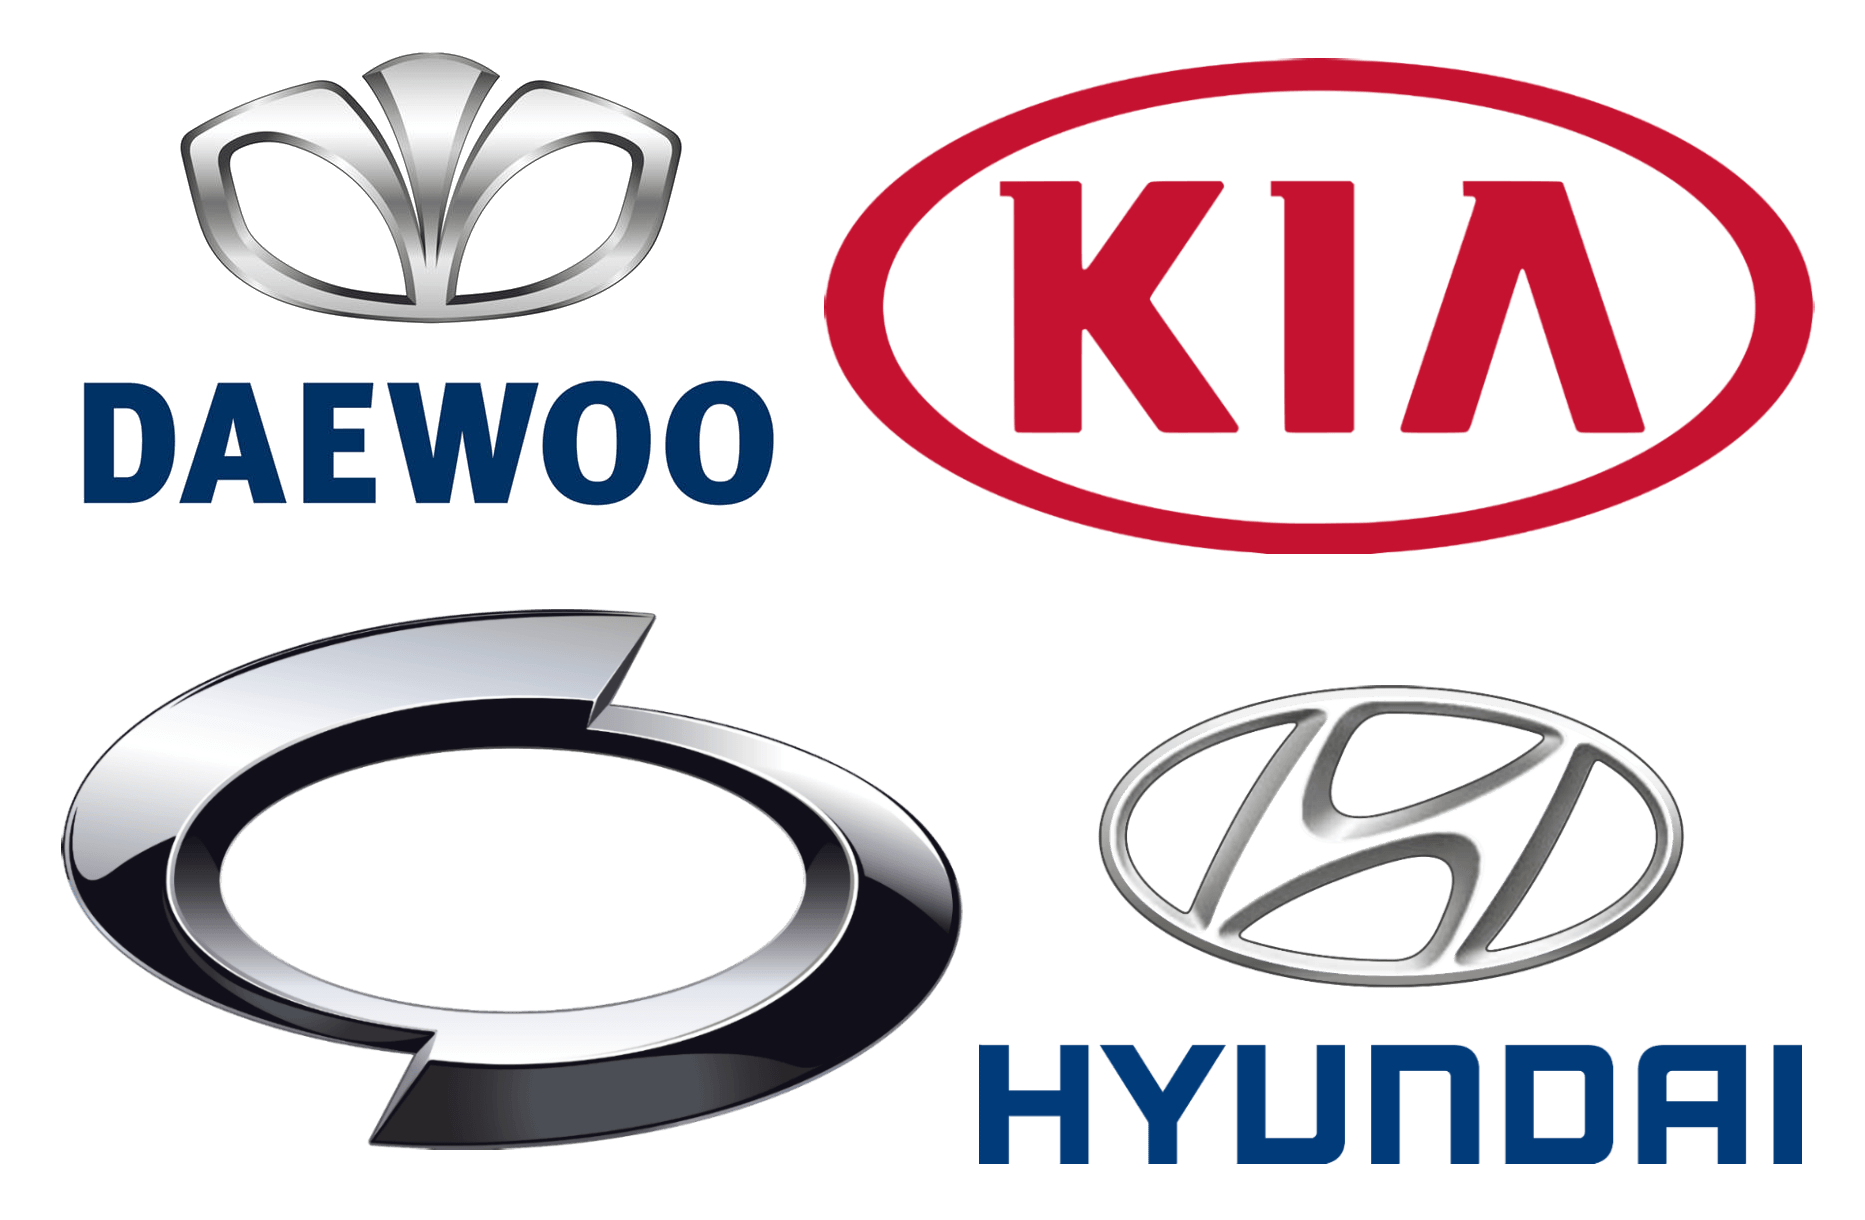 Foreign Auto Logo - Korean Car Brands, Companies and Manufacturers | Car Brand Names.com